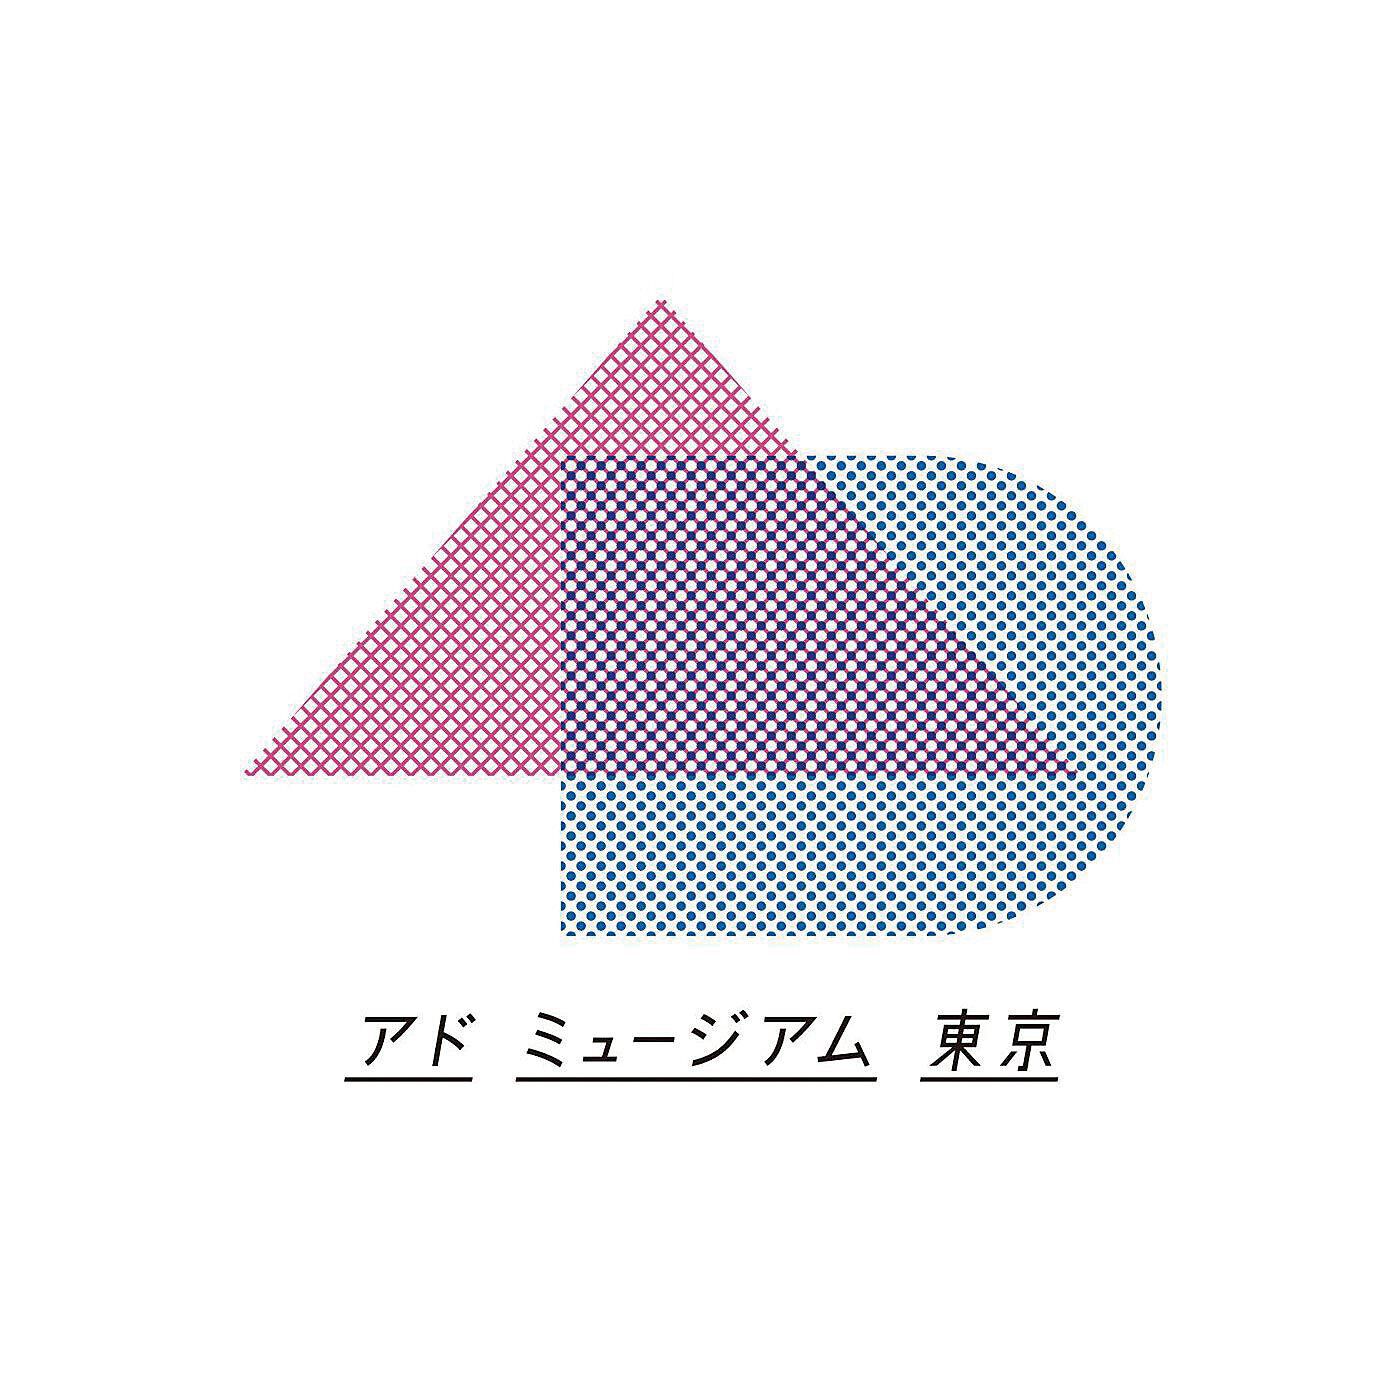 ミュージアム部|アドミュージアム東京×ミュージアム部　広告ポスターが写すレトロモダン ポケット付きタオルハンカチの会|日本で唯一の広告ミュージアム「アドミュージアム東京」とコラボレーションした企画です。